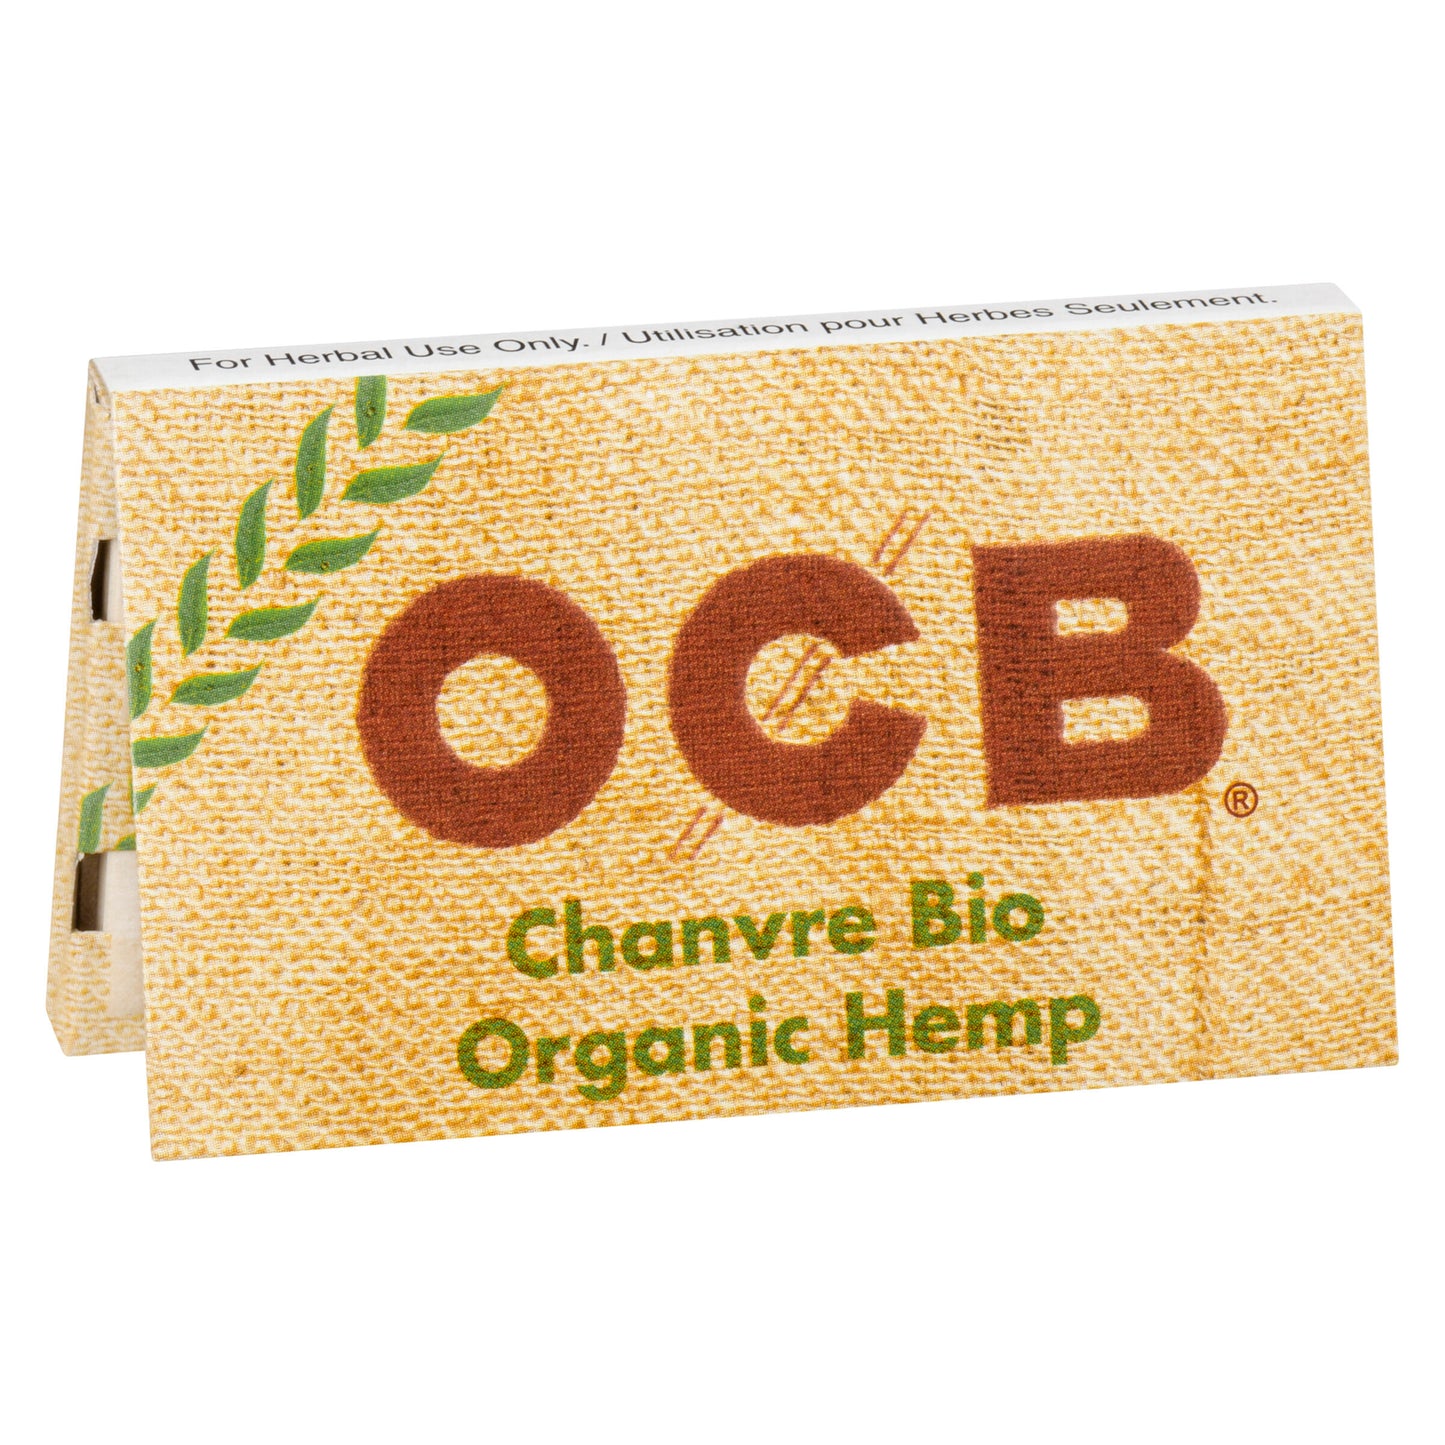 OCB - Organic Hemp Single Wide Double Rolling Papers